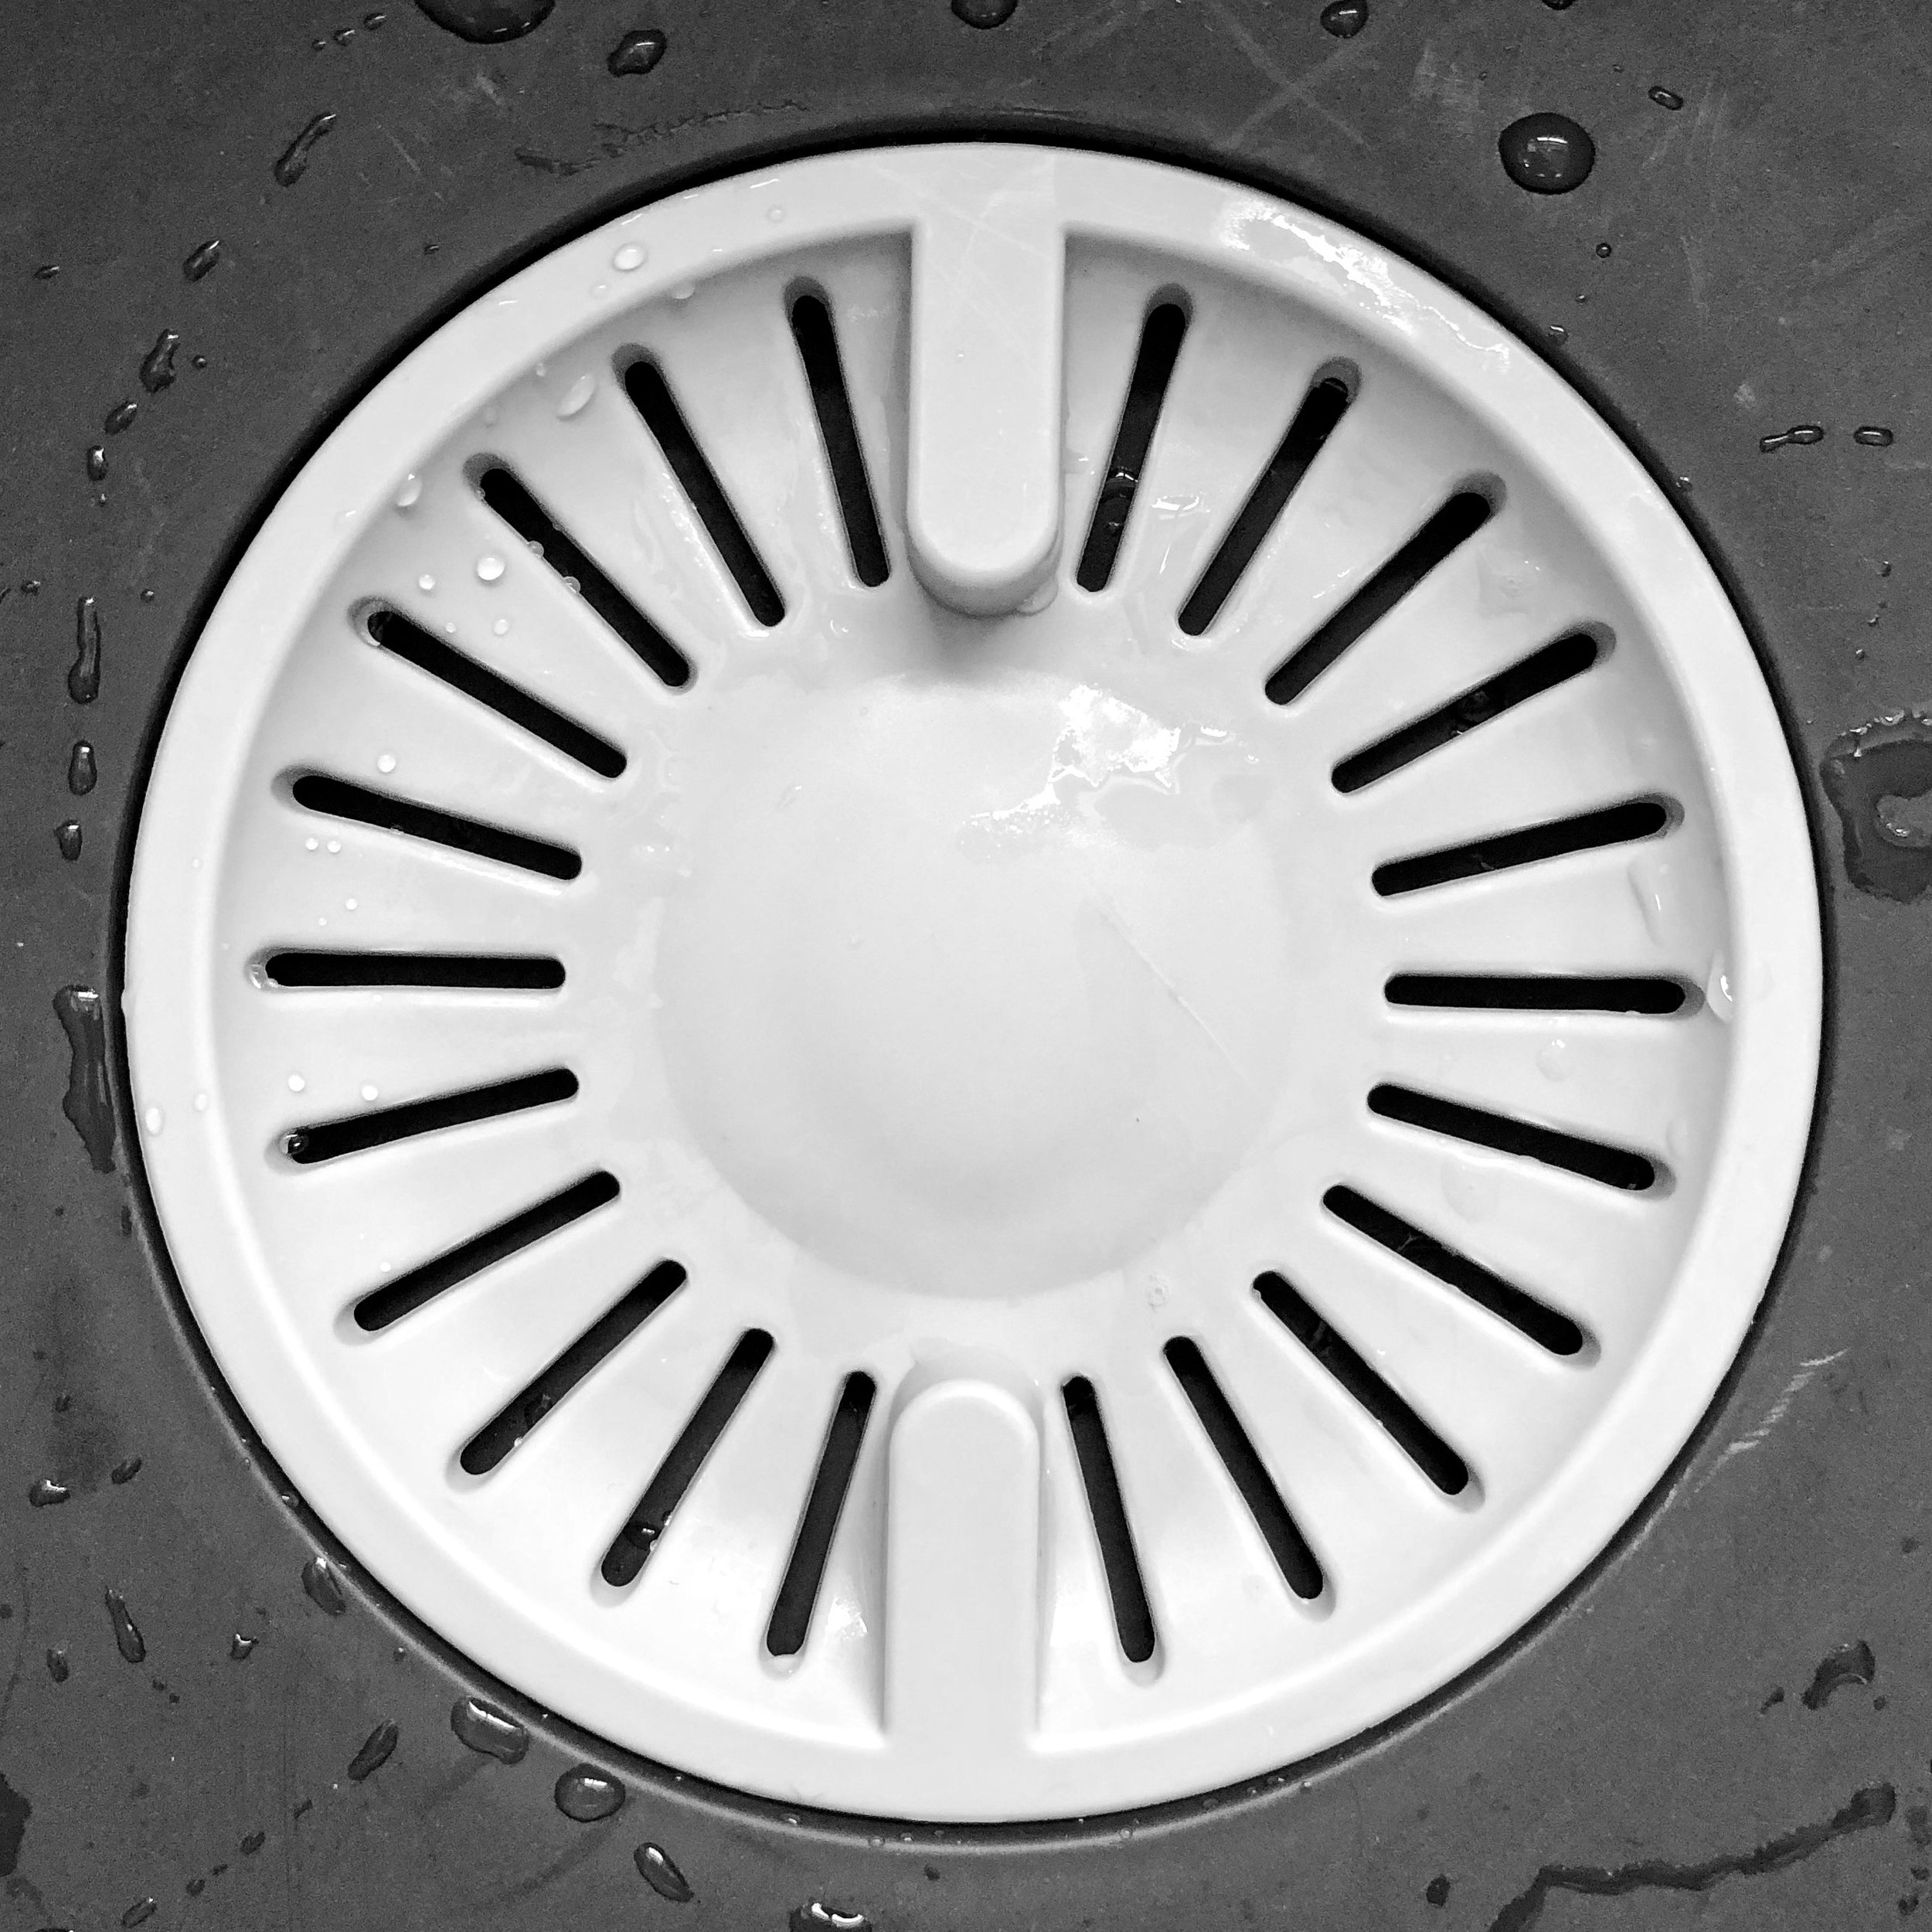  Wash bowl | injection moulded | polypropylene | Designed in the UK | SolidWorks | ives product design | injection moulding | homewares | consumer product design 